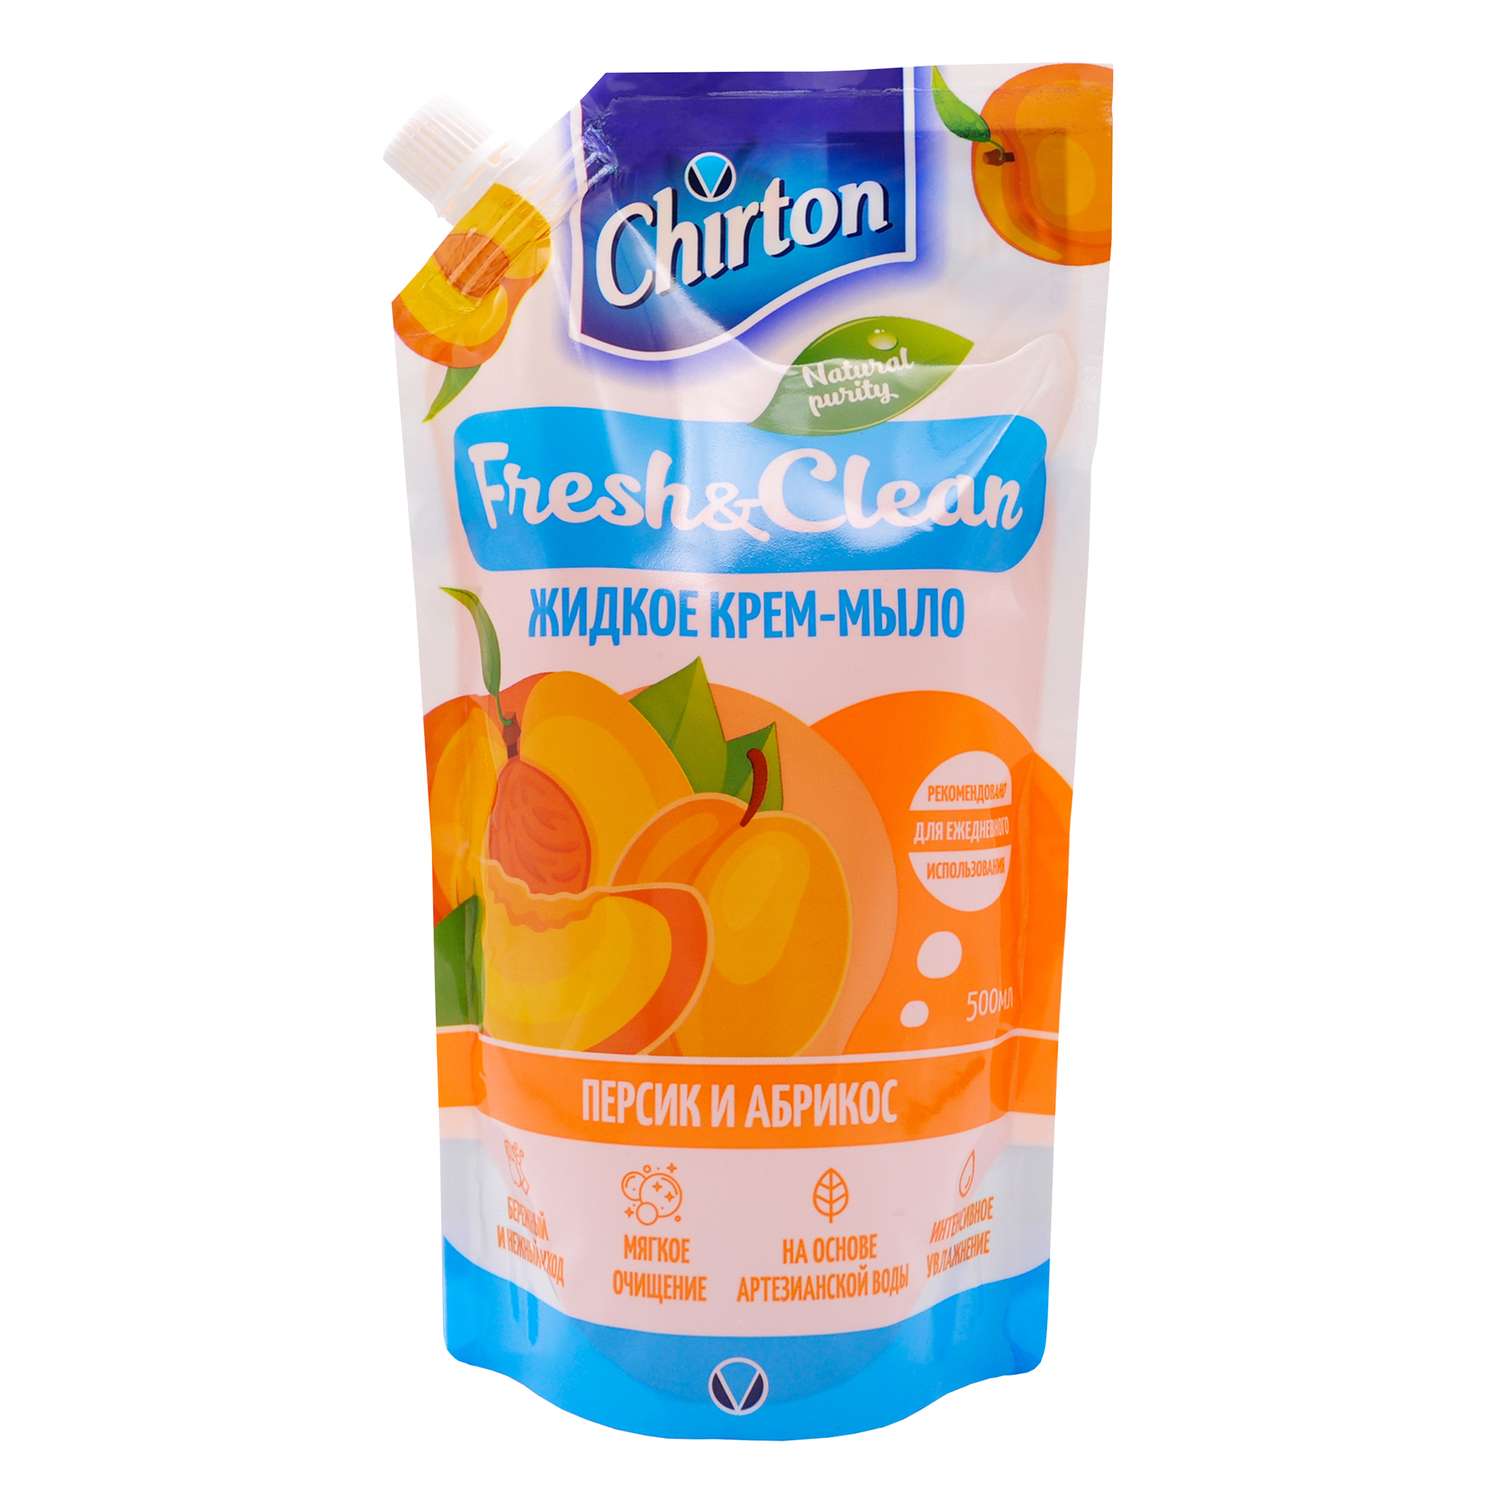 Жидкое крем-мыло Chirton Персик и абрикос 500 мл - фото 1